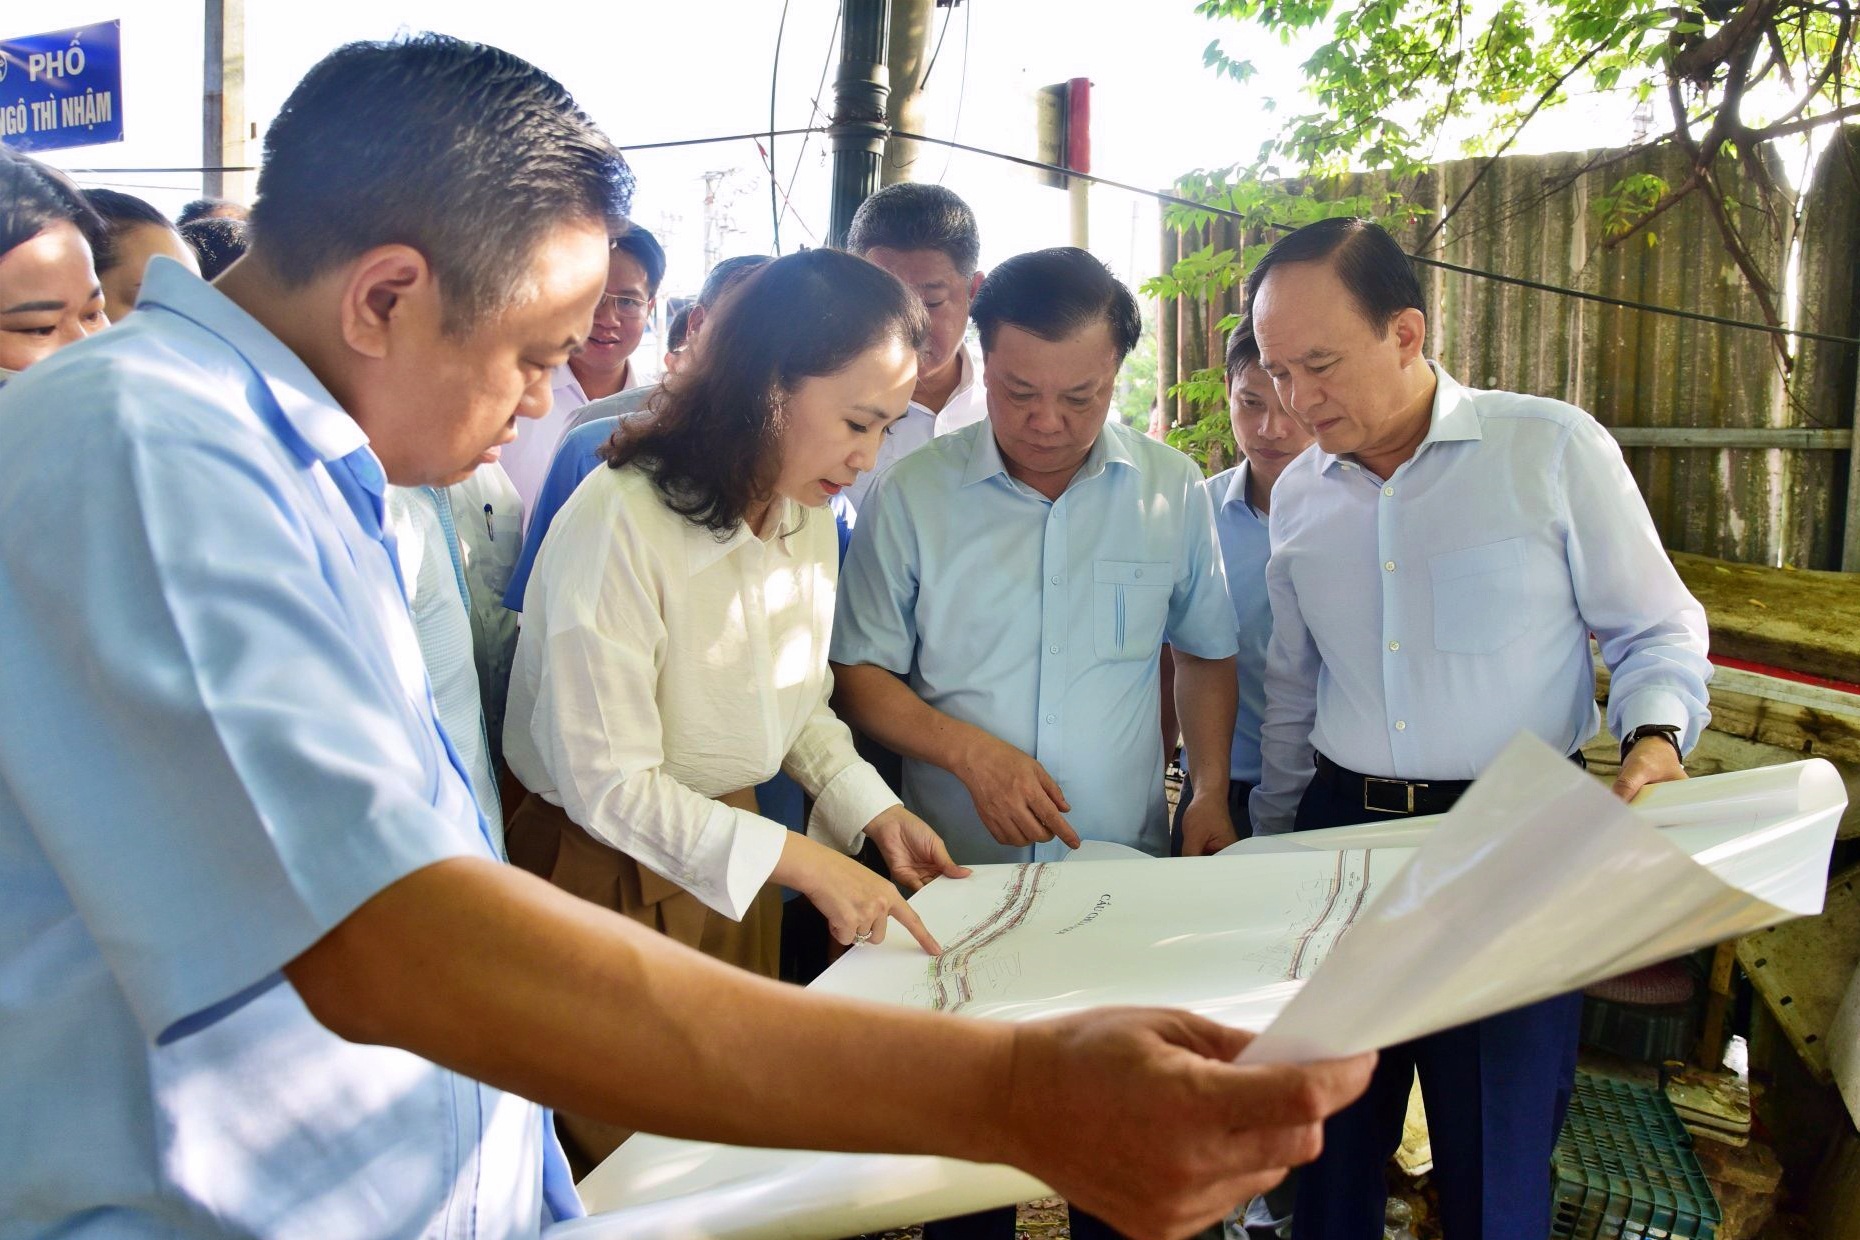 Bí thư, Chủ tịch Hà Nội thị sát dự án trạm bơm 4.700 tỷ đồng lụt tiến độ - 1